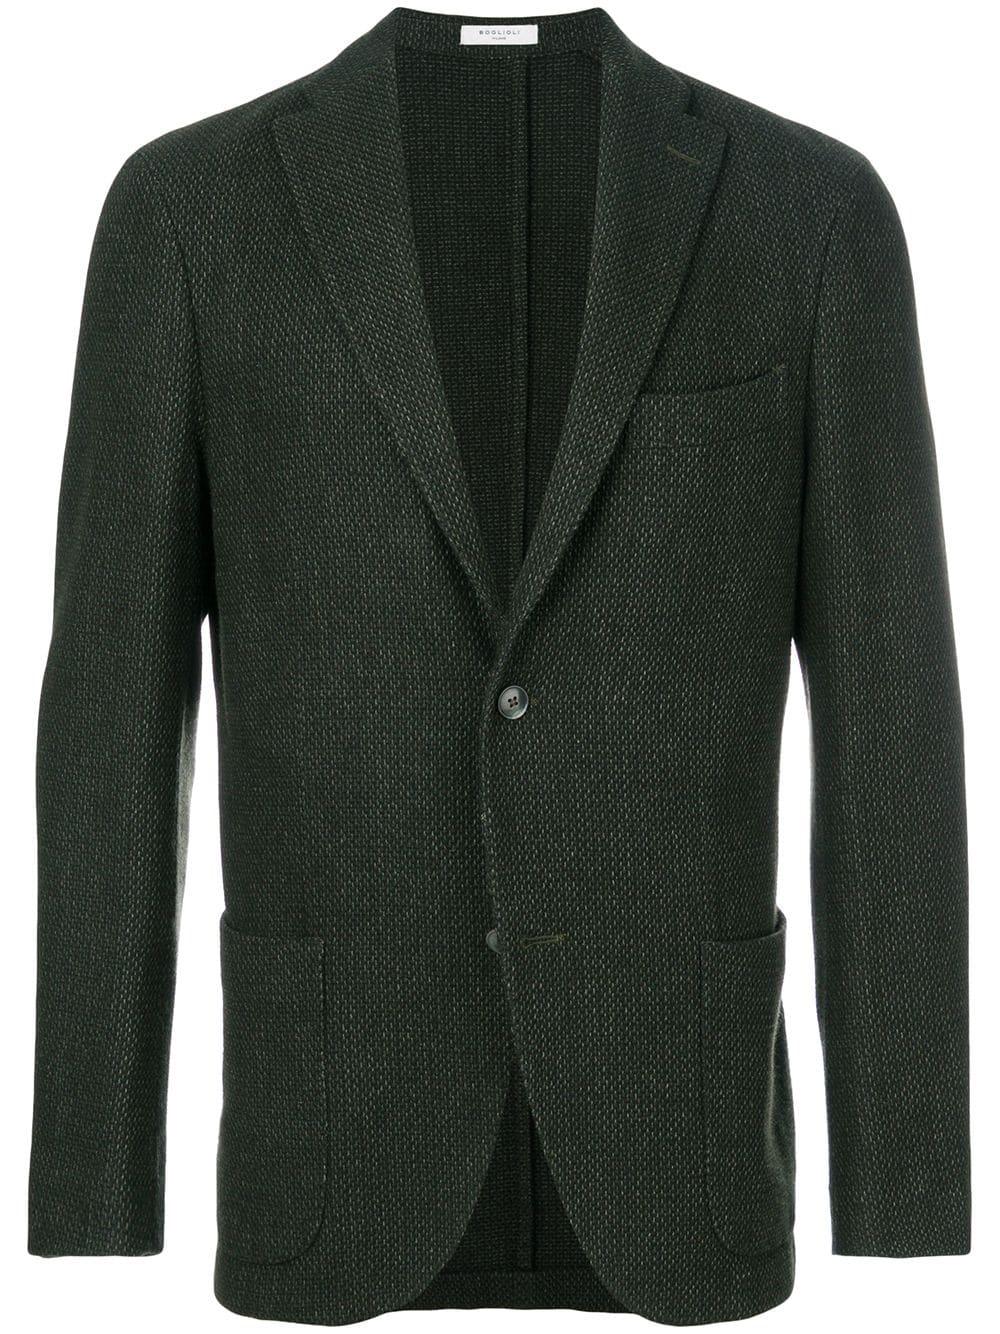 Boglioli Wool Slim-fit Woven Blazer in Green for Men - Lyst